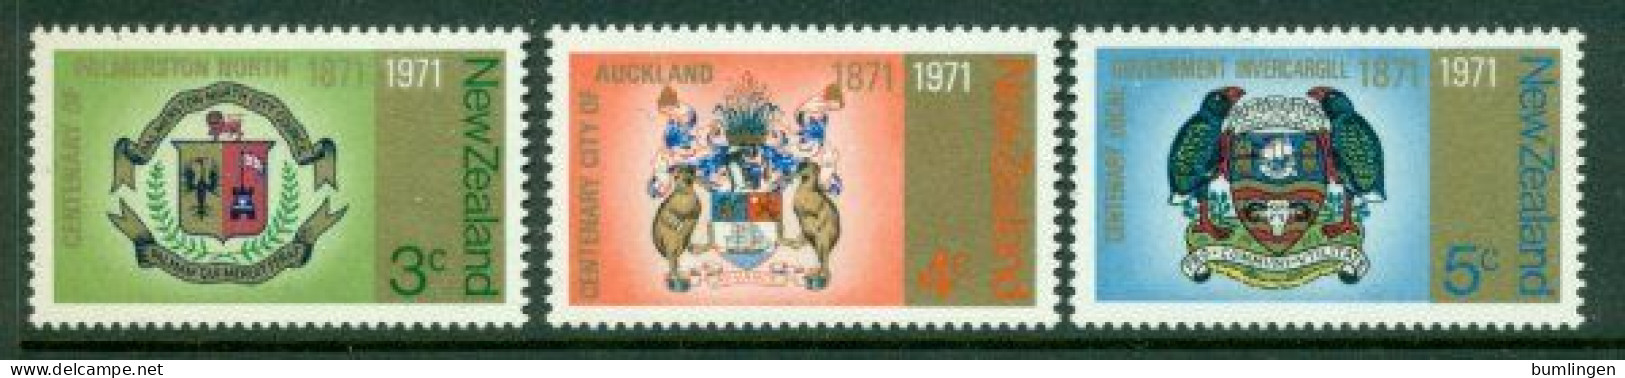 NEW ZEALAND 1971 Mi 554-56** City Coat Of Arms [B874] - Briefmarken